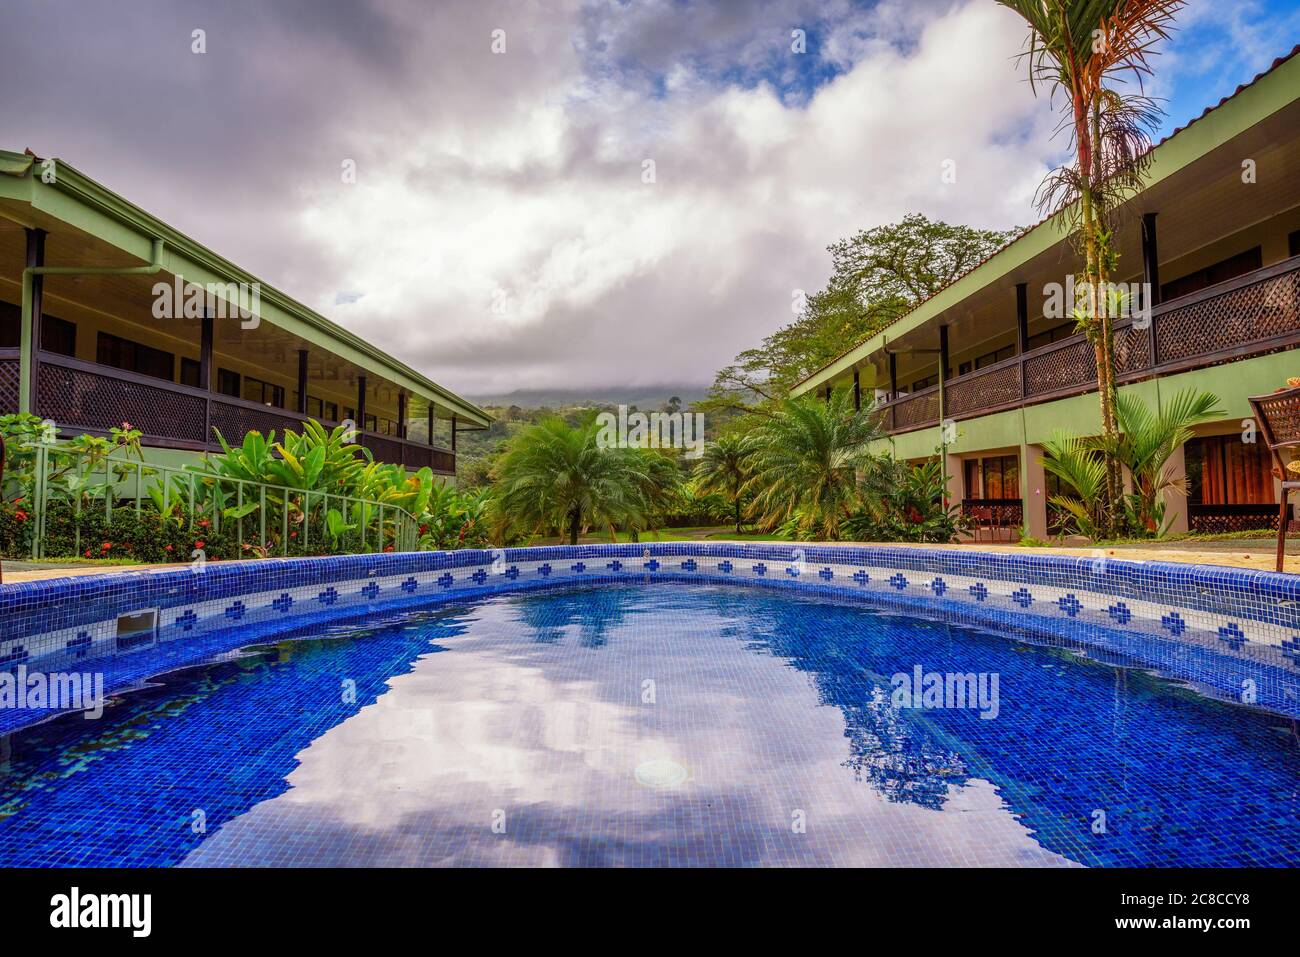 La Fortuna, Costa Rica - 16 janvier 2020 : Hôtel laves Tacotal avec piscine extérieure. Il est situé à la Fortuna et offre une vue magnifique sur Arenal Banque D'Images